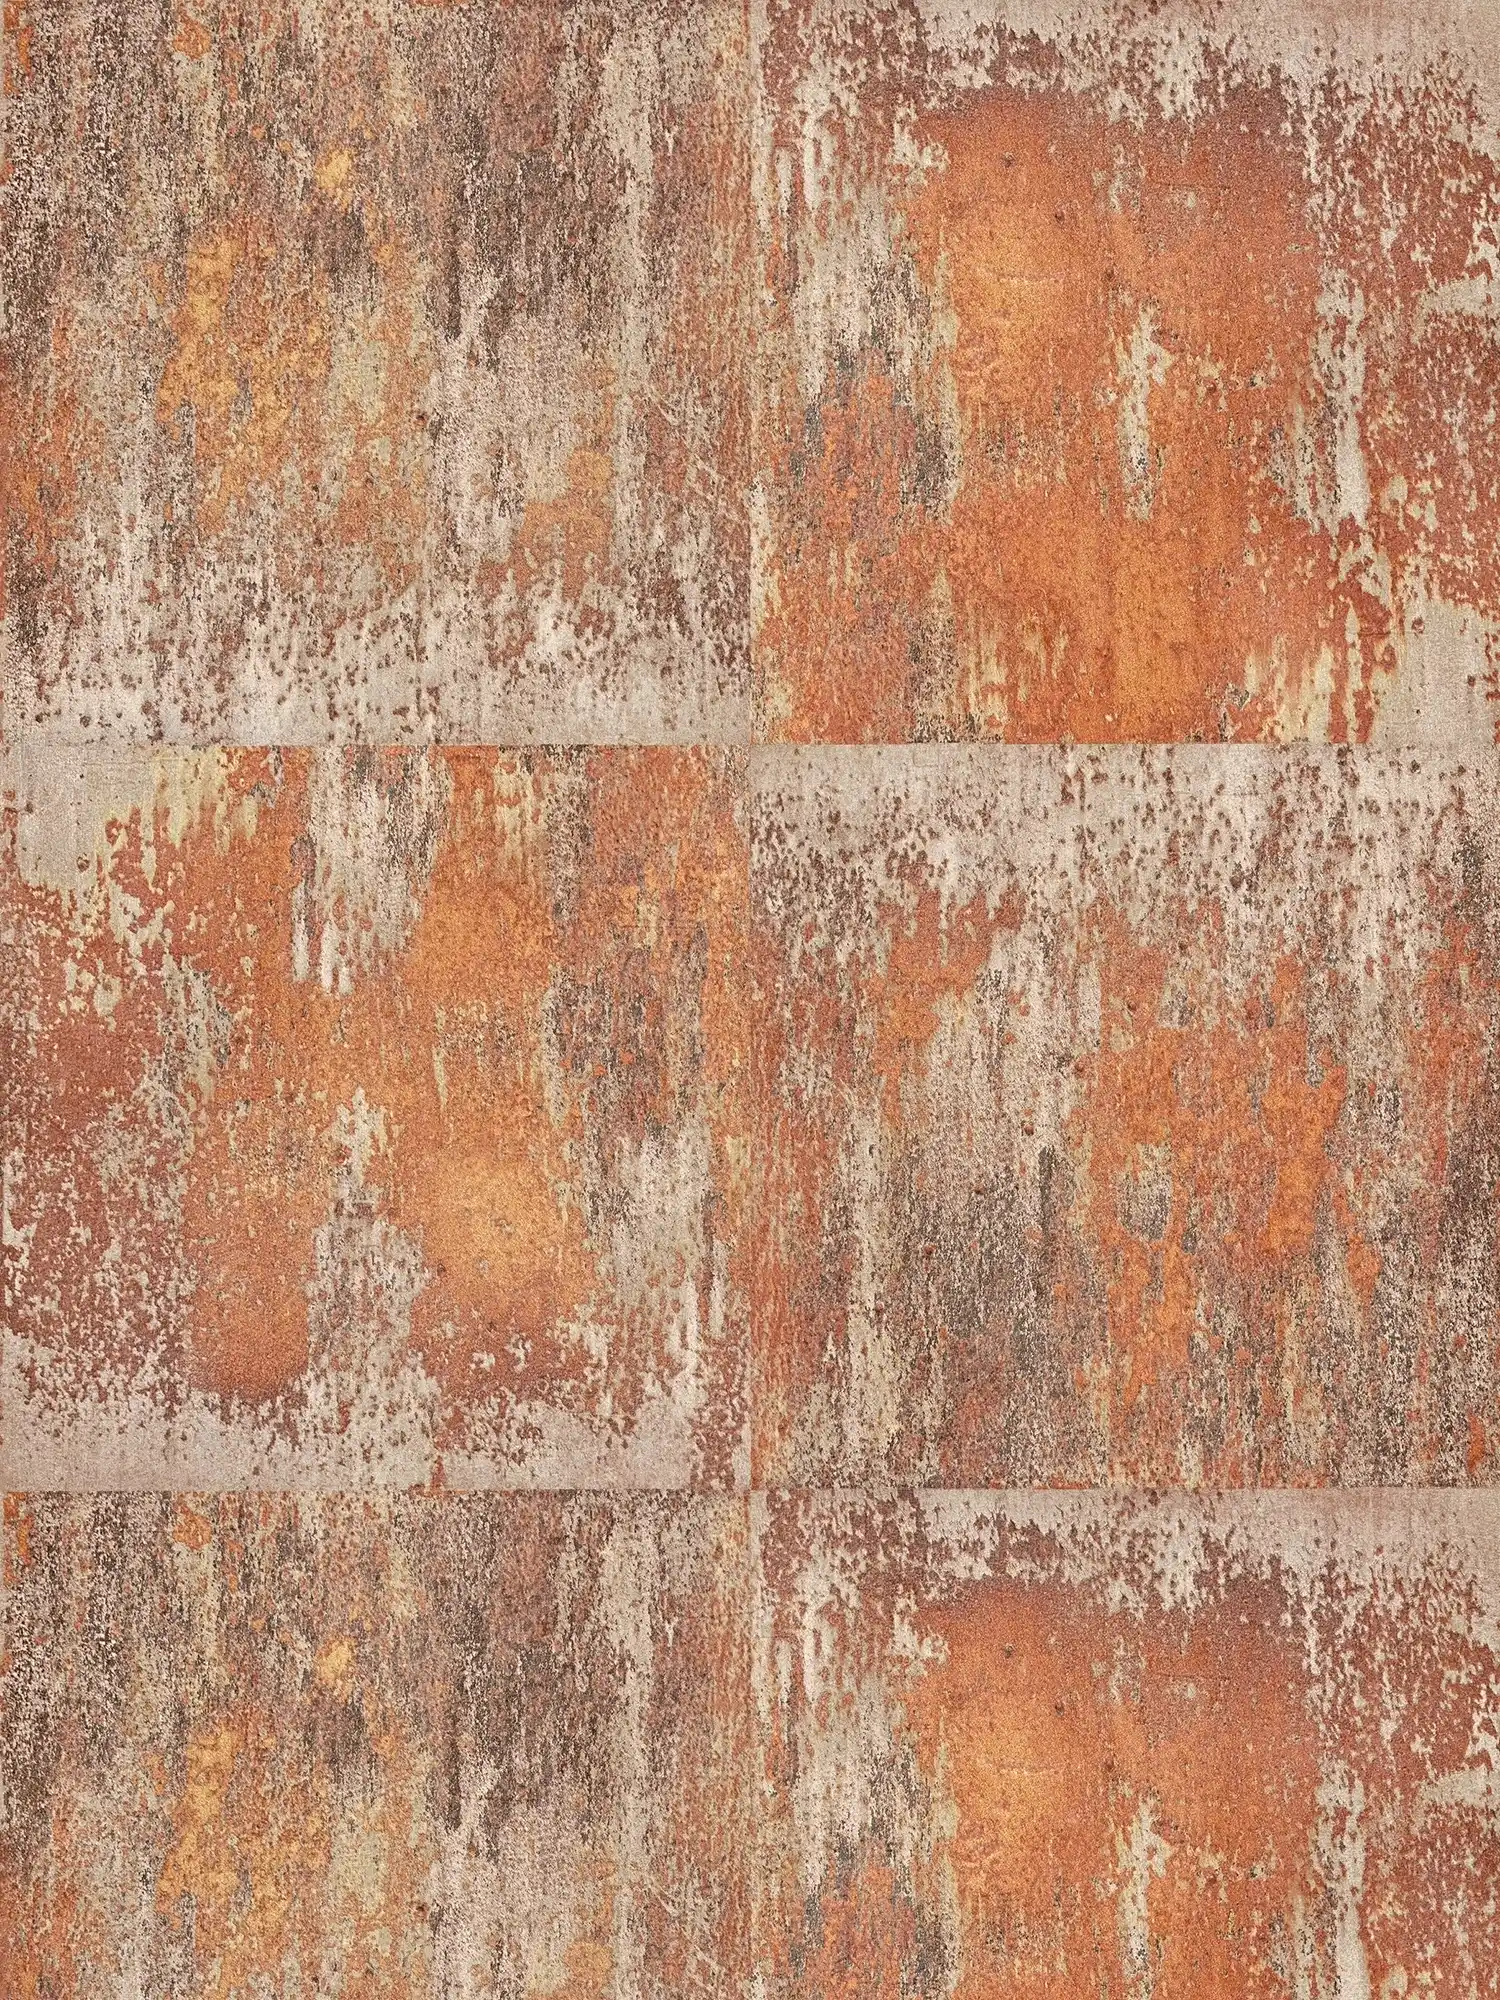 Vliesbehang patina design met roest en koper effecten - oranje, bruin, koper
